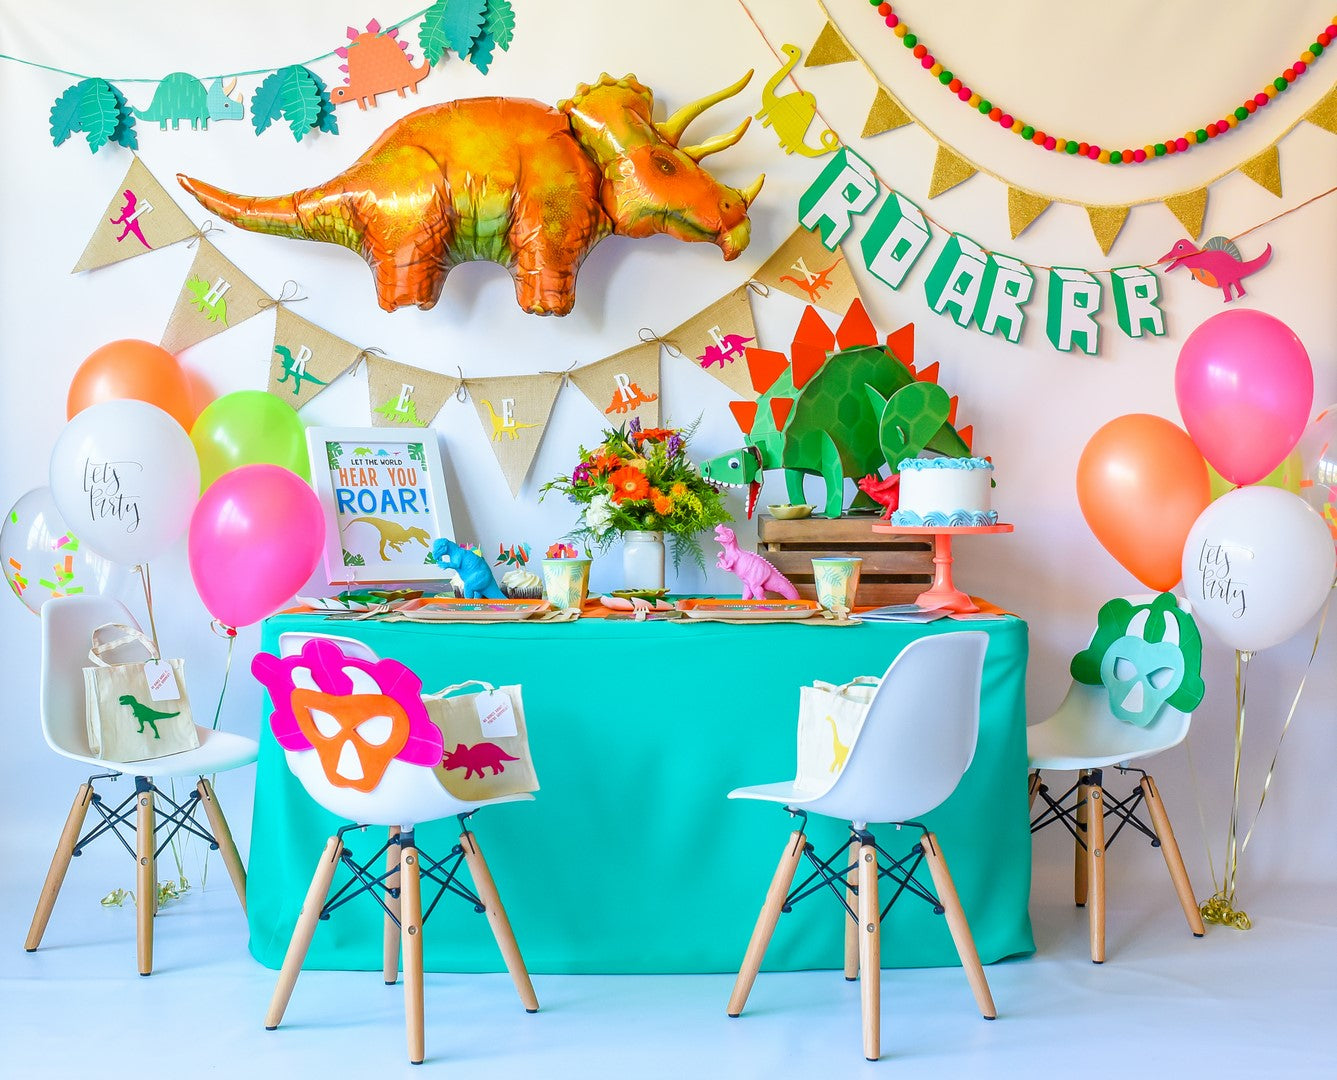 Roar-tastic Dinosaur Party Ideas for a Party-saurus